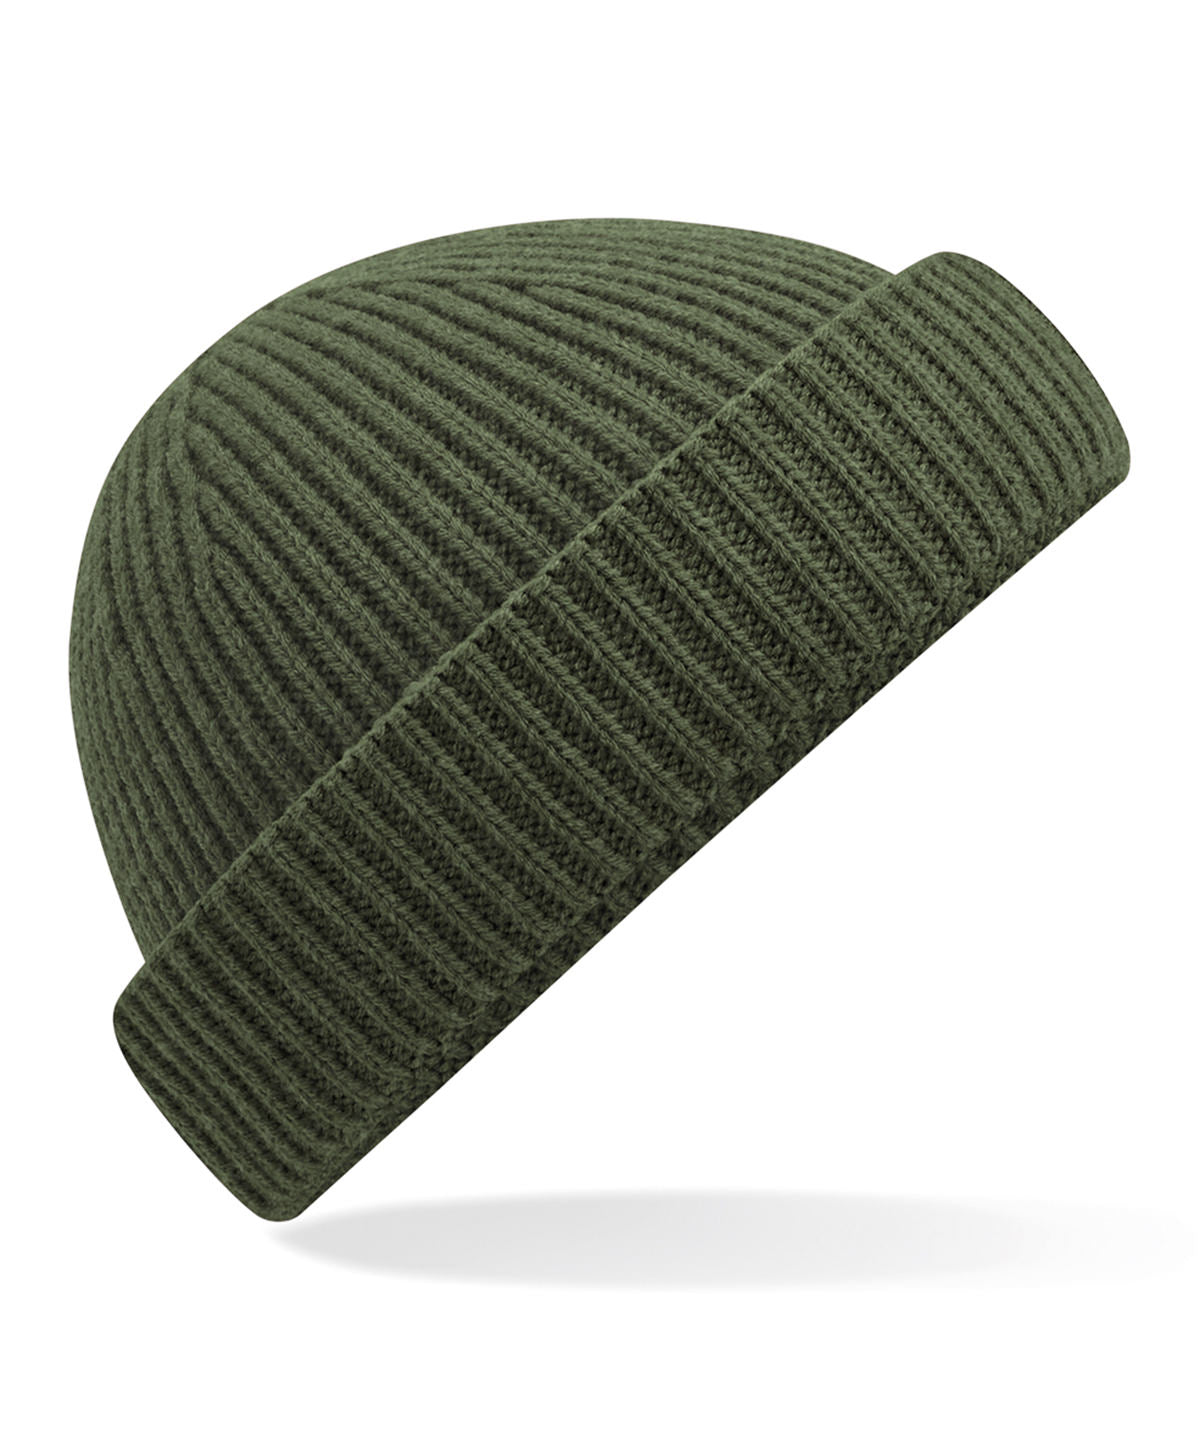 Personalised Hats - Dark Brown Beechfield Harbour beanie